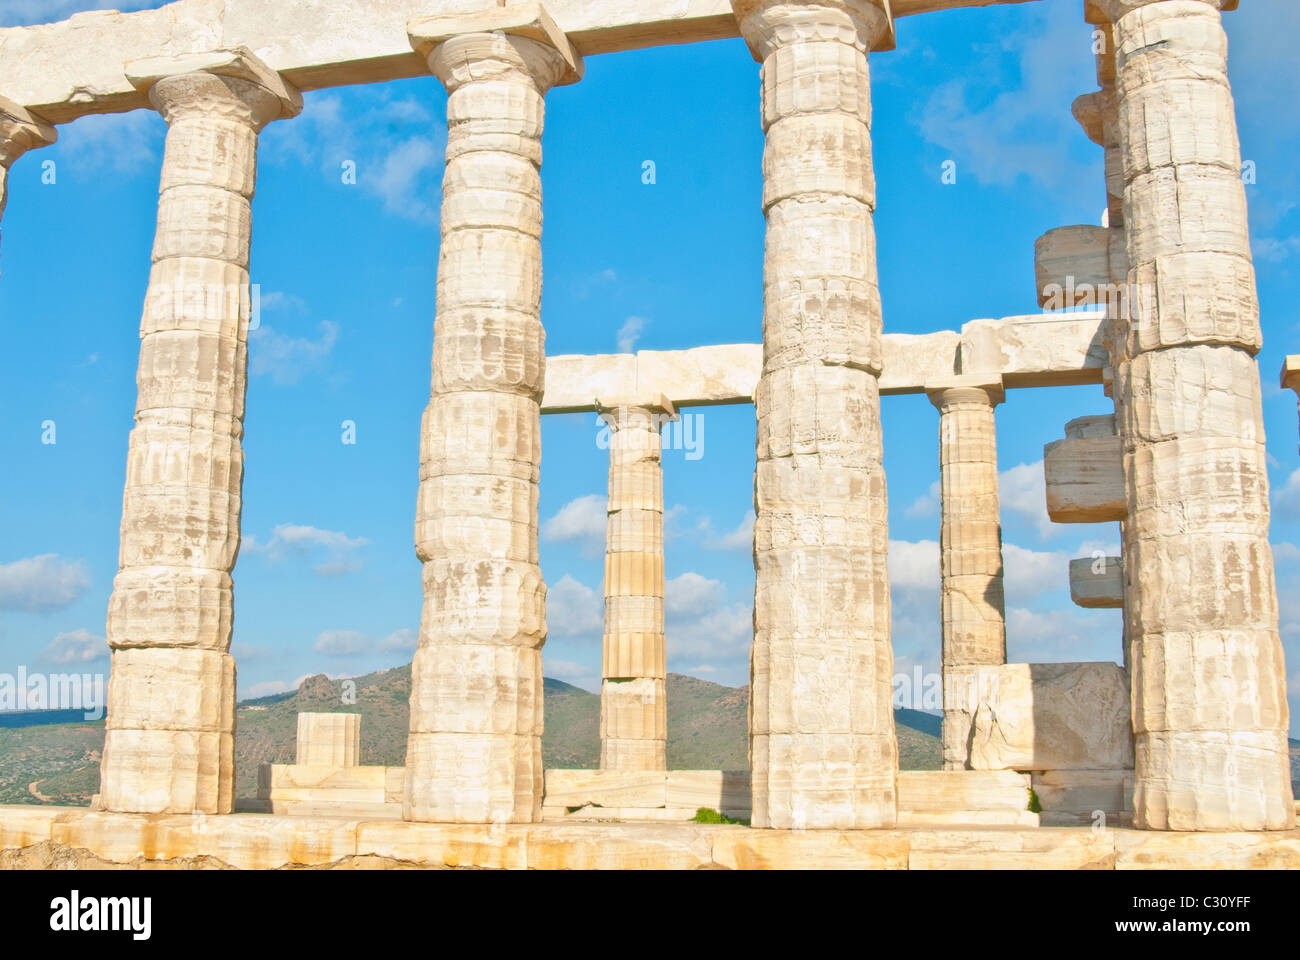 Capo Sounion fa notare come il sito di rovine di un antico tempio greco di Poseidone, il dio del mare nella mitologia classica. Foto Stock